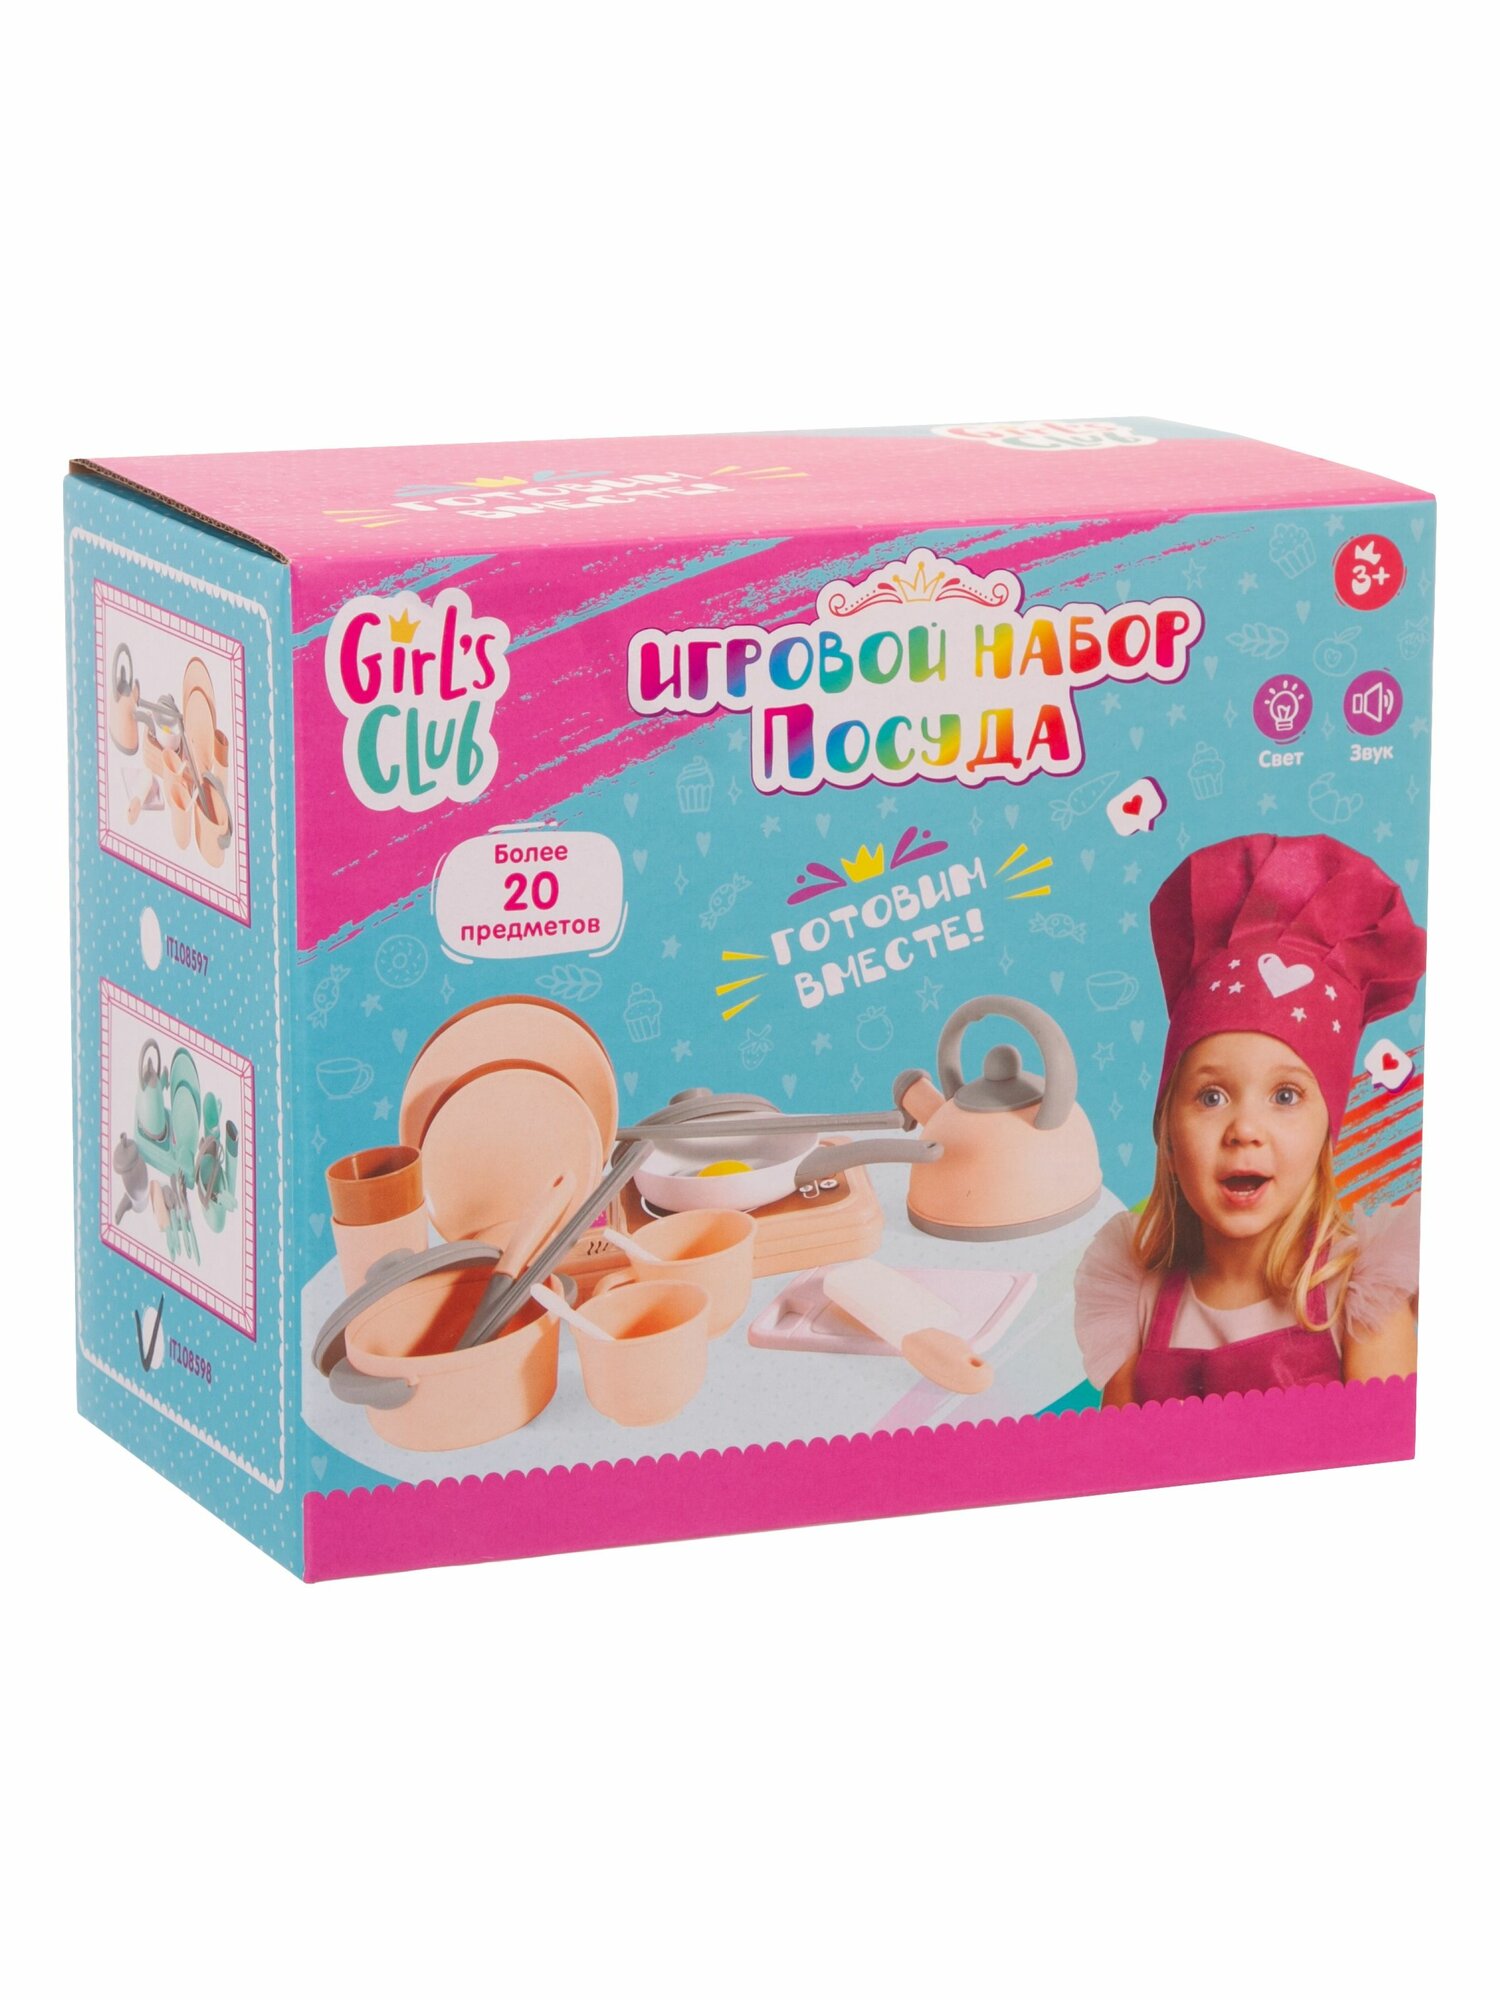 Girl's Club Игровой набор Посуда, световые и звуковые эффекты, розовый, 24 предметов, 22х13х18 см